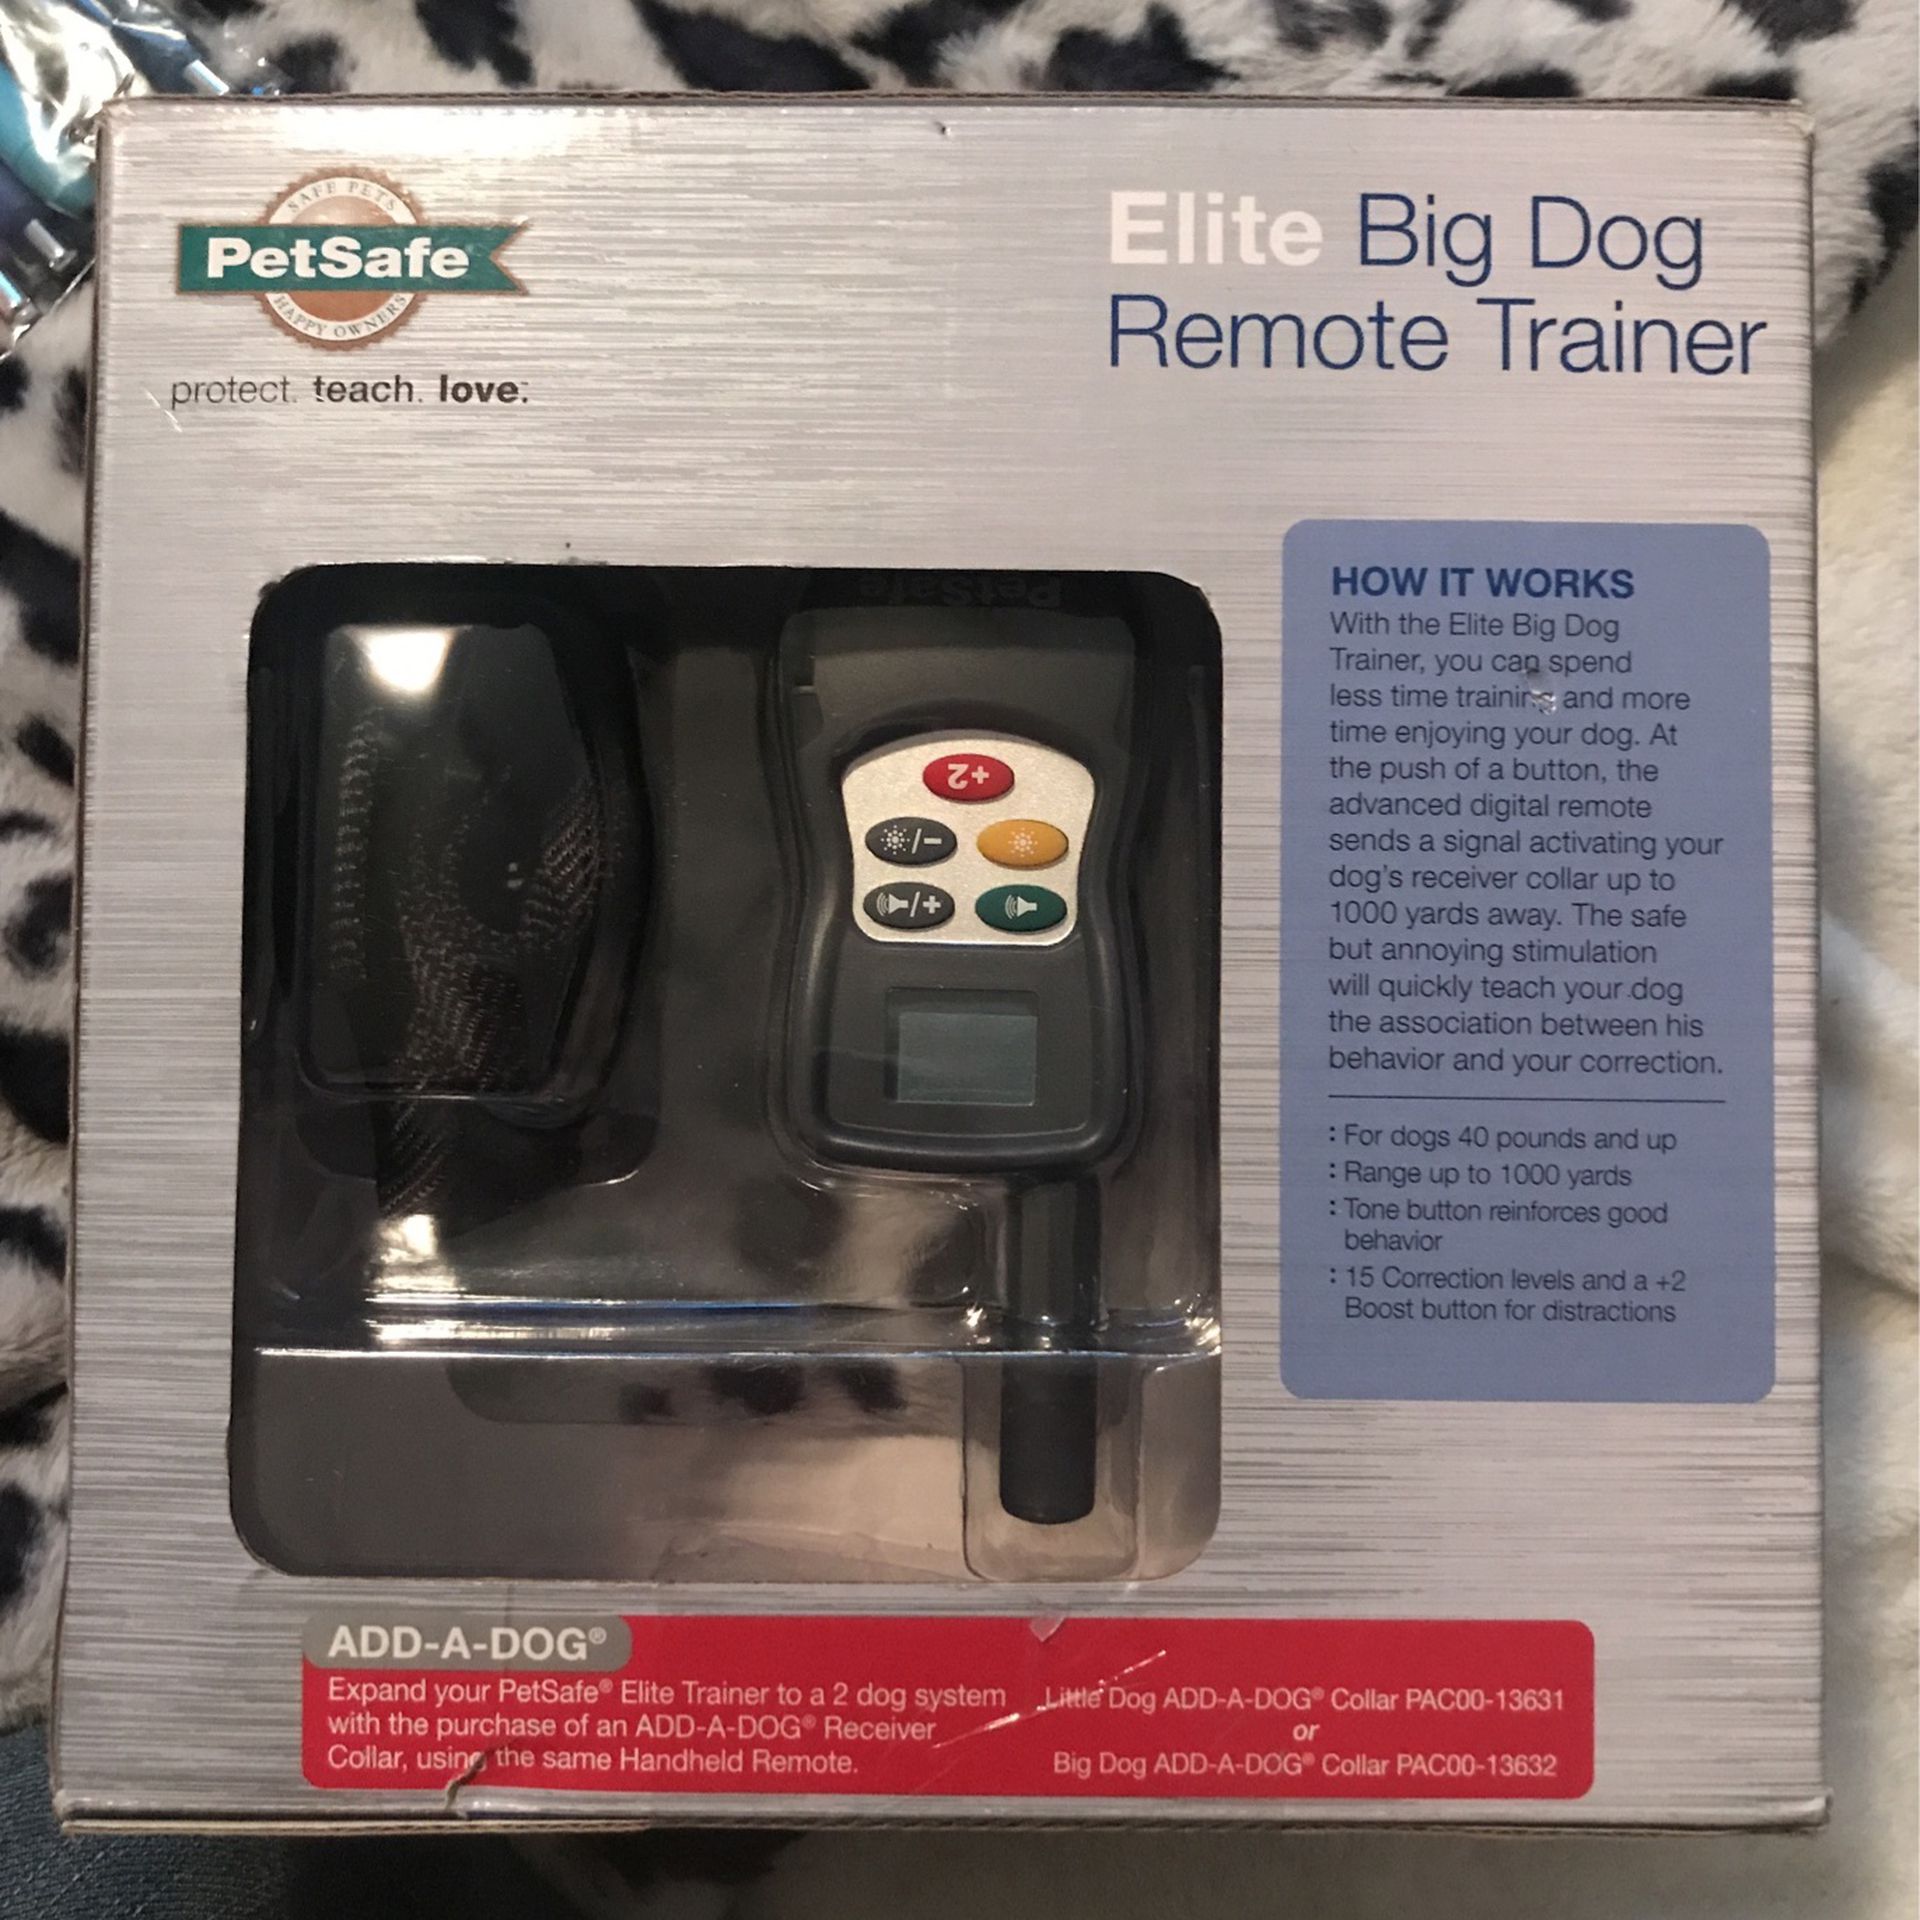 Pet safe Elite Big Dog Remote Trainer